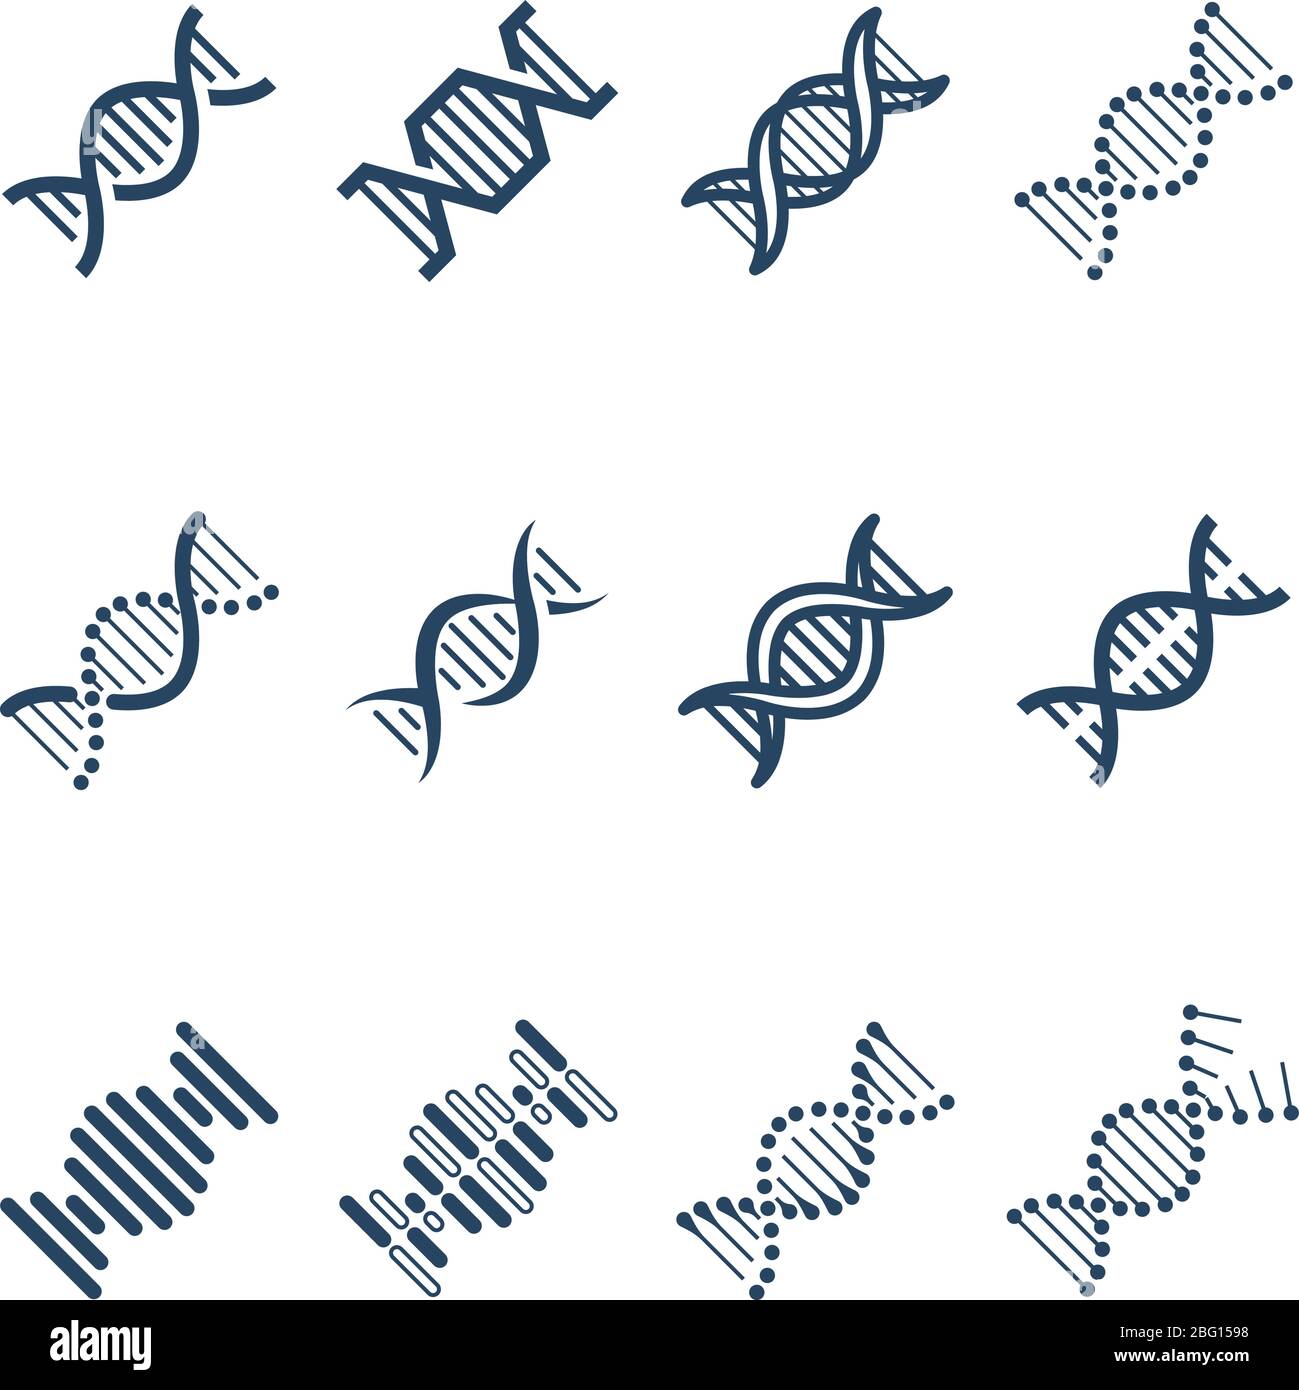 Iconos de vectores de estructura de moléculas en espiral de ADN. Investigación genética y símbolos de ingeniería cromosómica. Estructura cromosoma adn y molécula genética ilustración Ilustración del Vector